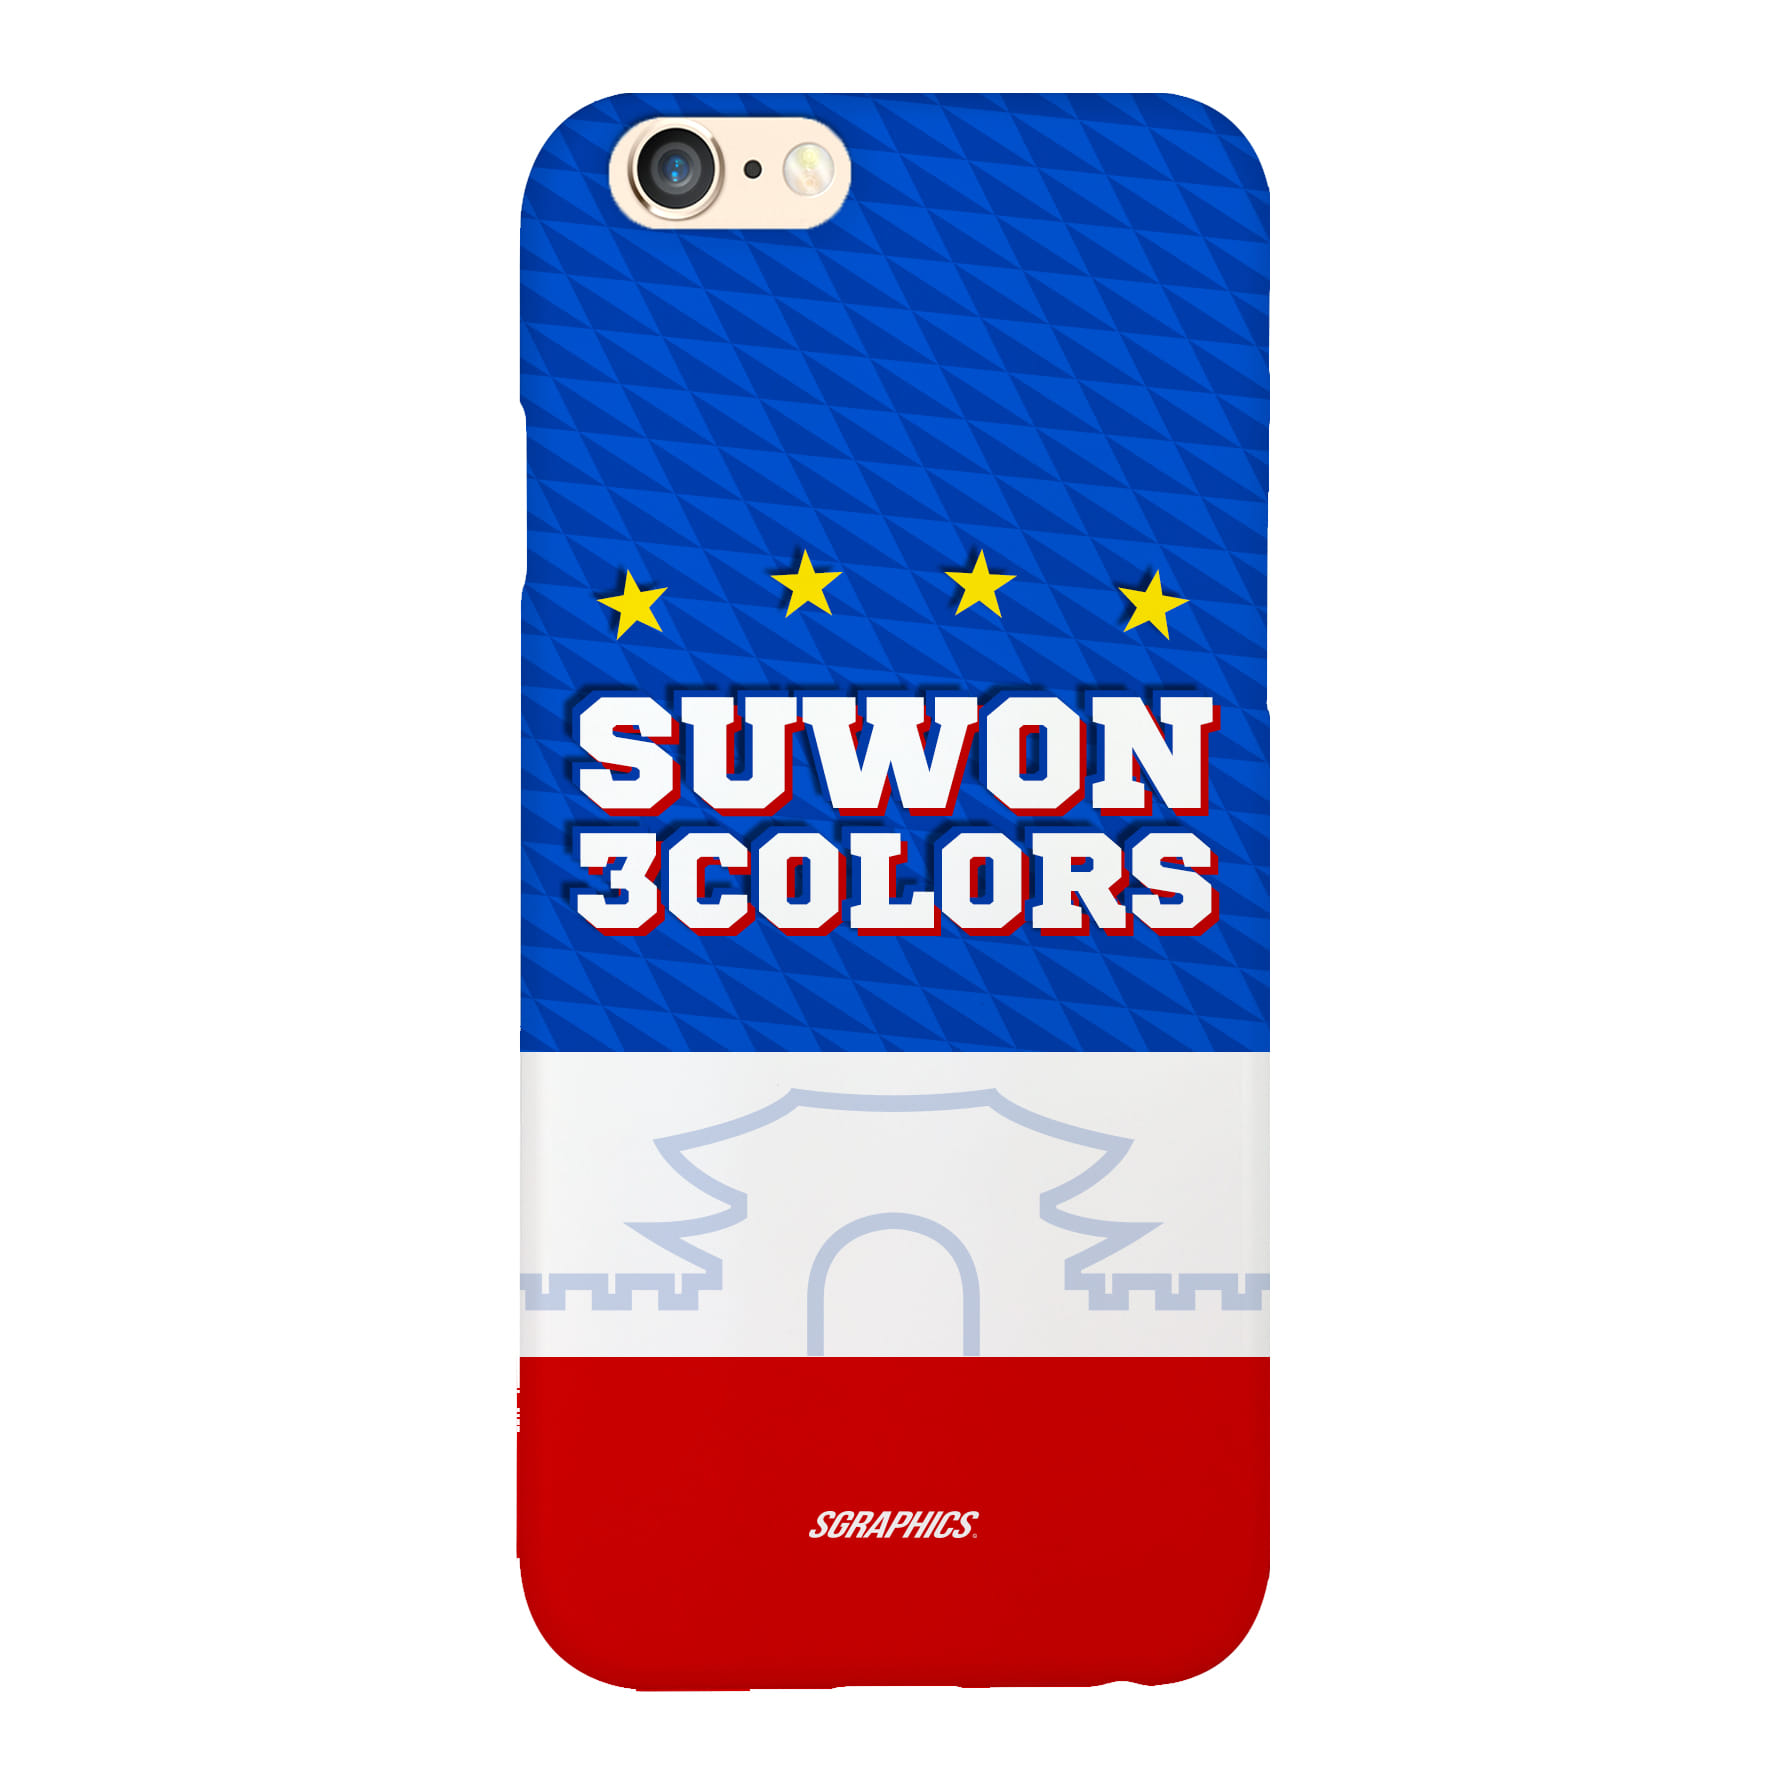 수원3Colors 청백적폰케이스. Suwon 3 Colors.